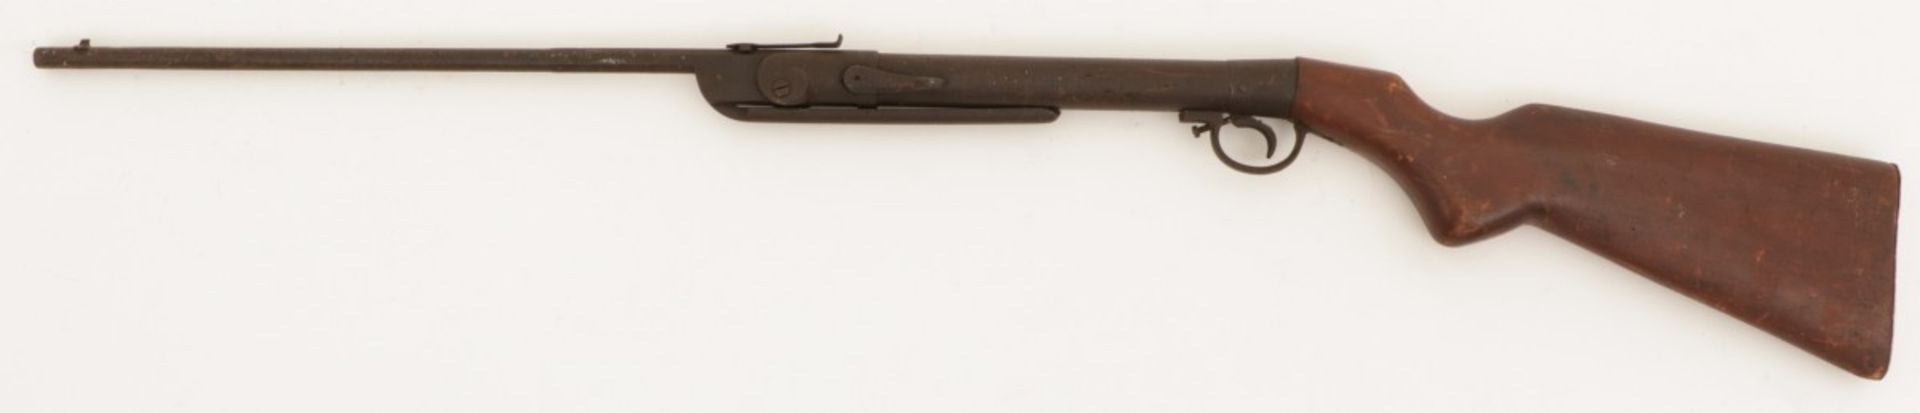 A single barrel shotgun, ca. 1900.